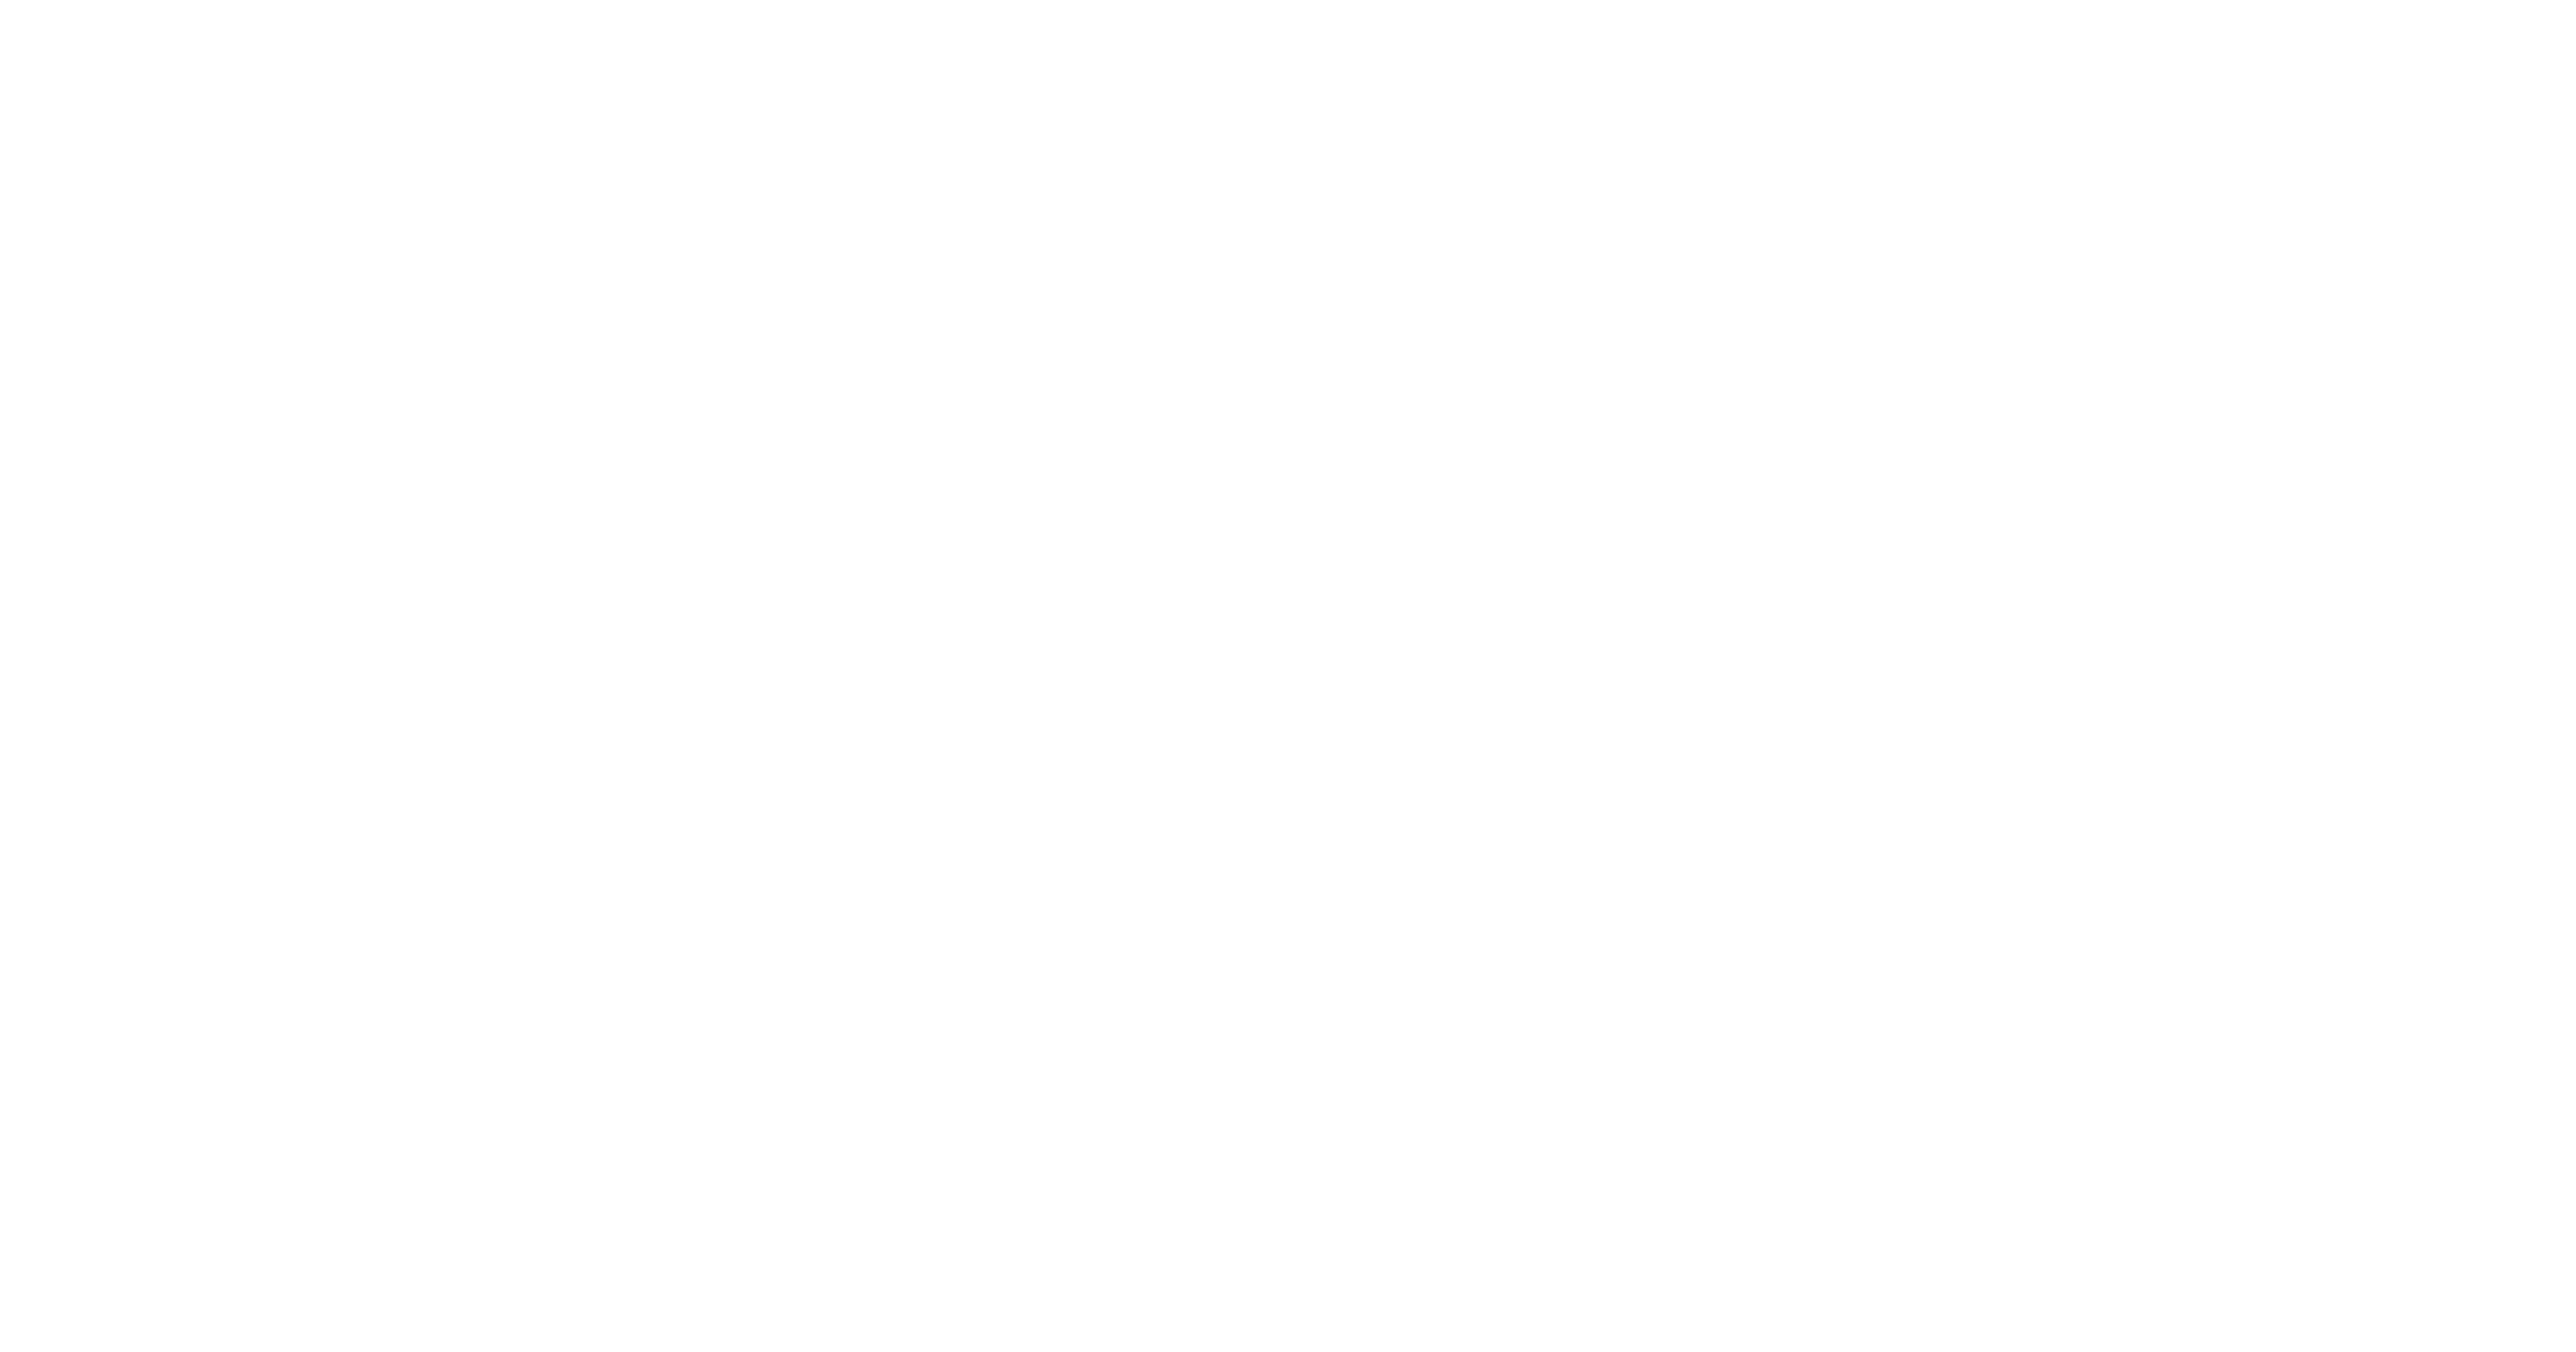 Sportovní poháry a medaile - Latoz, s.r.o. Cheb